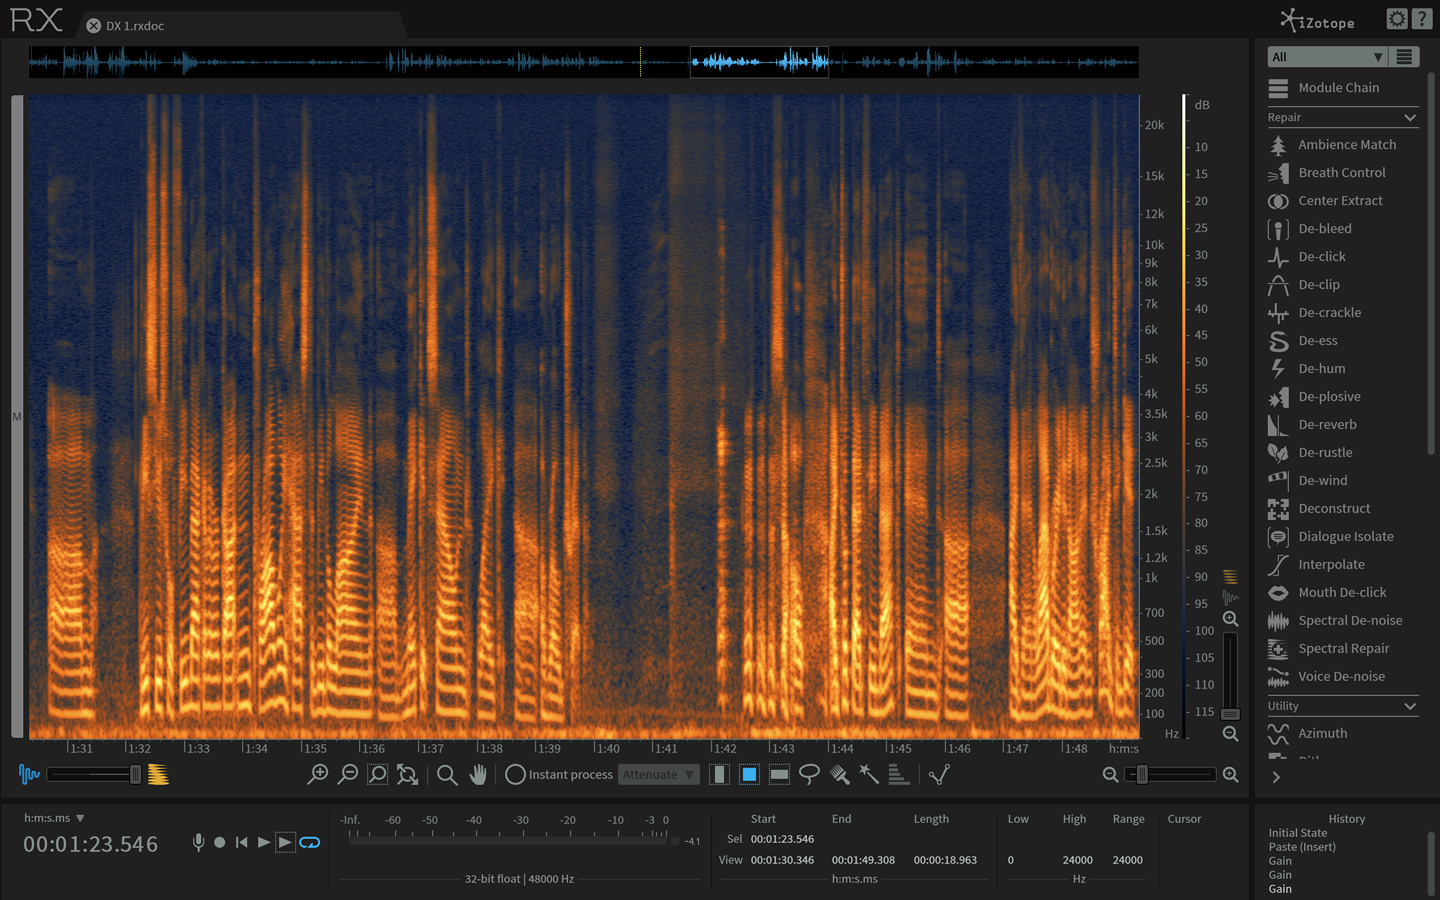  iZotope RX 11 Audio Editor Advanced 11.0.0 (x64) CPt